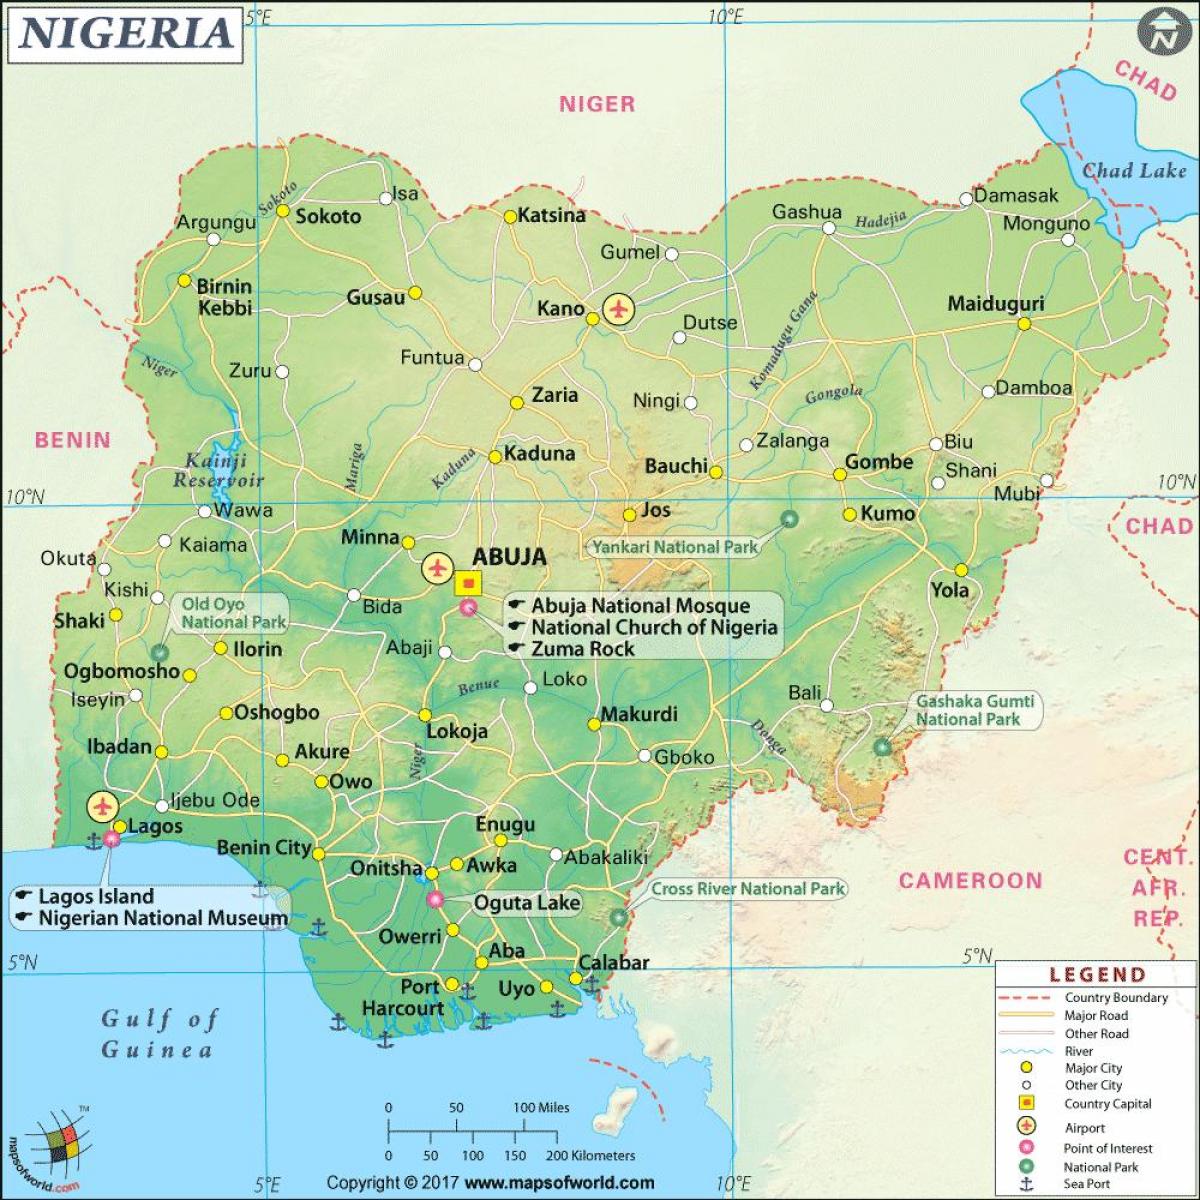 foto's van die nigeriese kaart